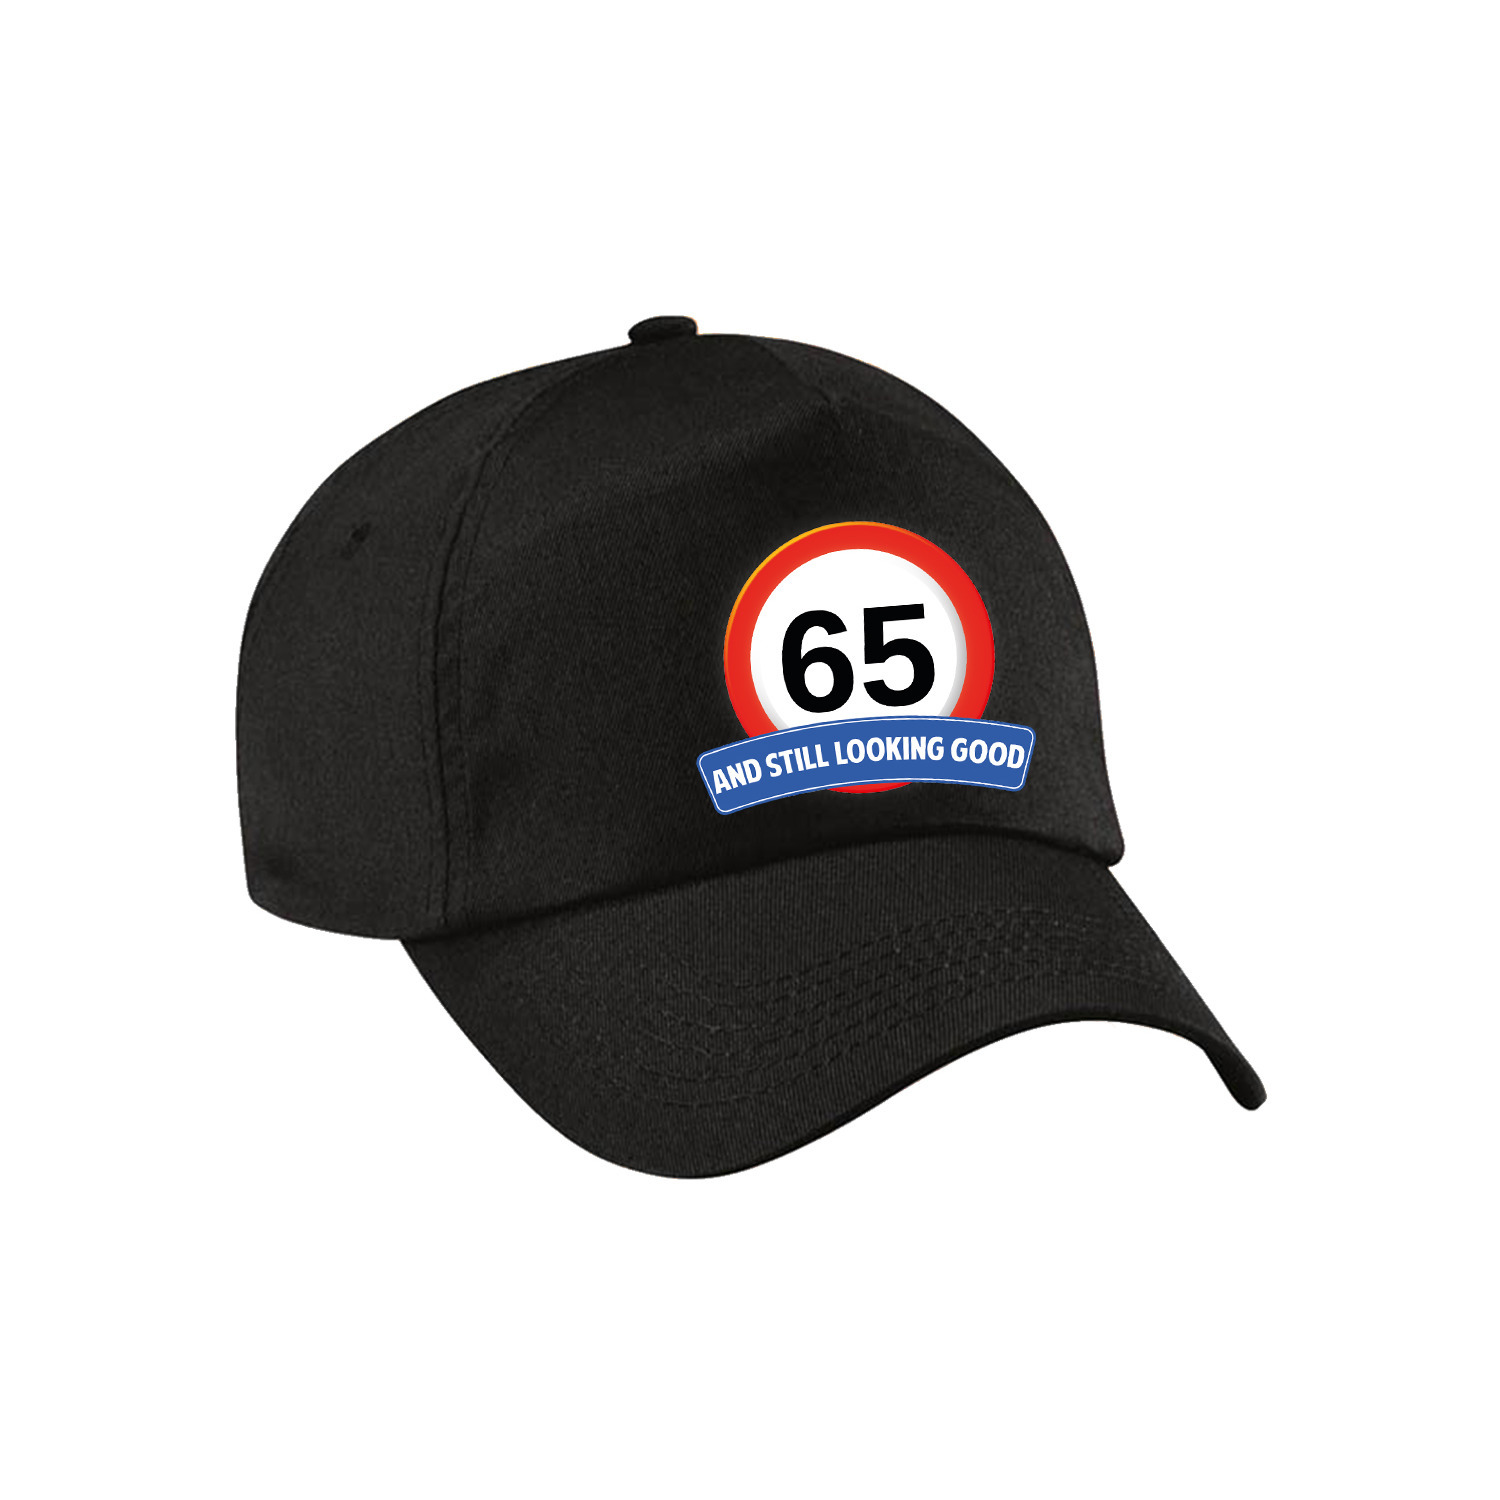 65 and still looking good stopbord pet-cap zwart voor volwassenen